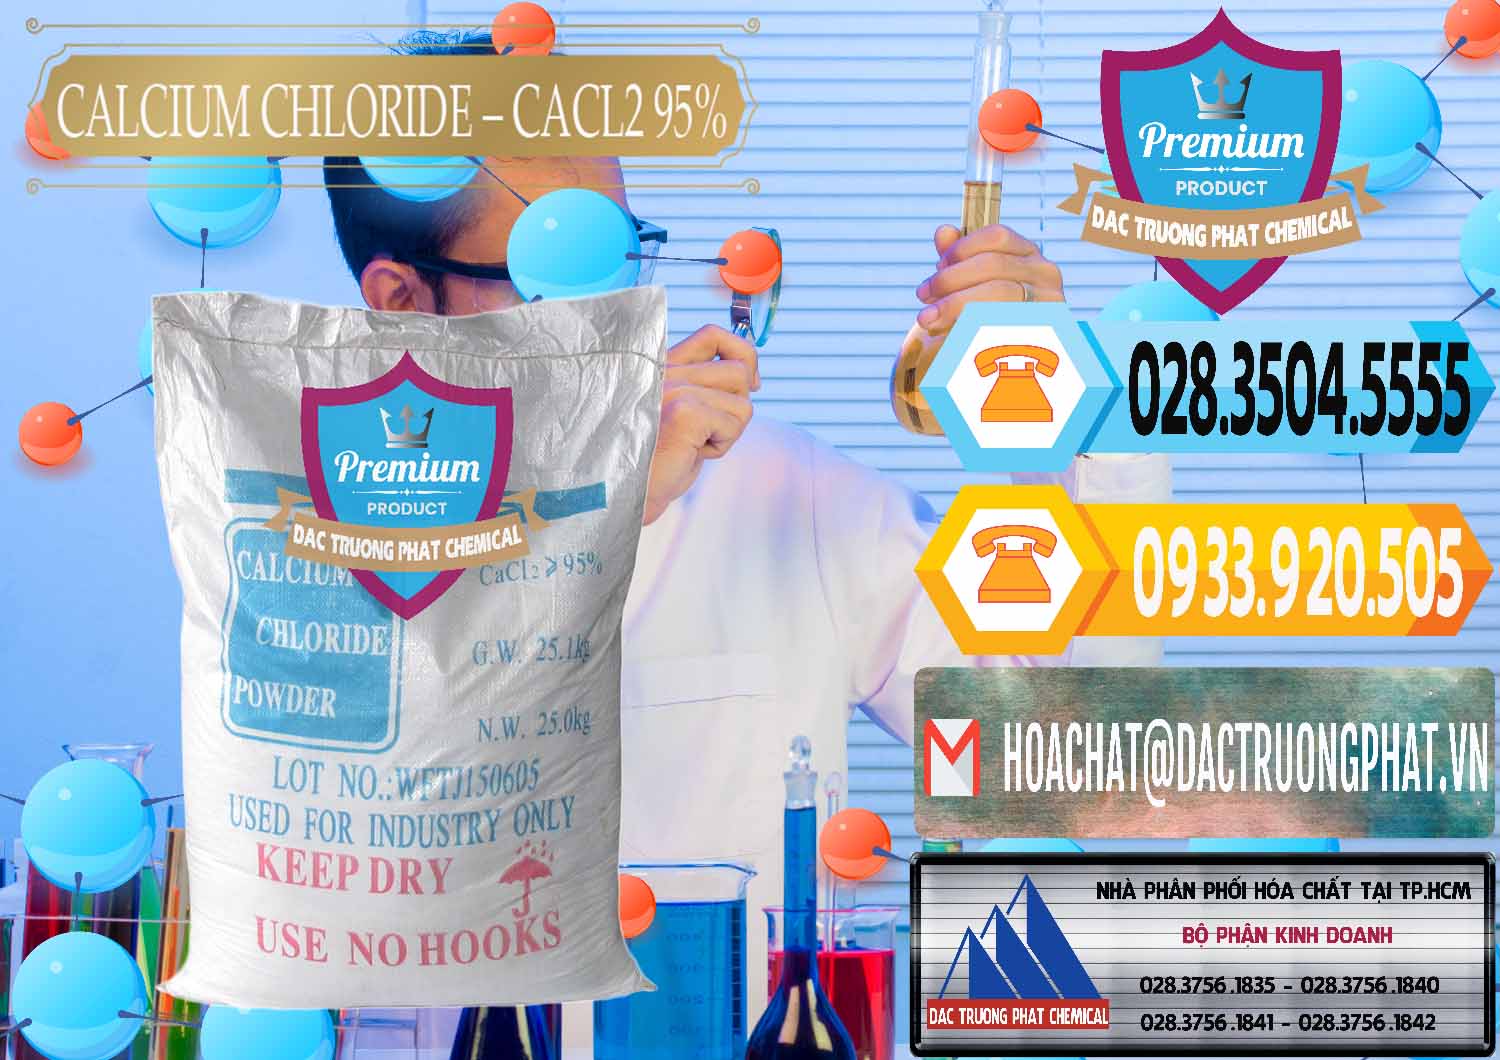 Đơn vị chuyên cung cấp ( bán ) CaCl2 – Canxi Clorua 95% Trung Quốc China - 0039 - Công ty phân phối ( bán ) hóa chất tại TP.HCM - hoachattayrua.net